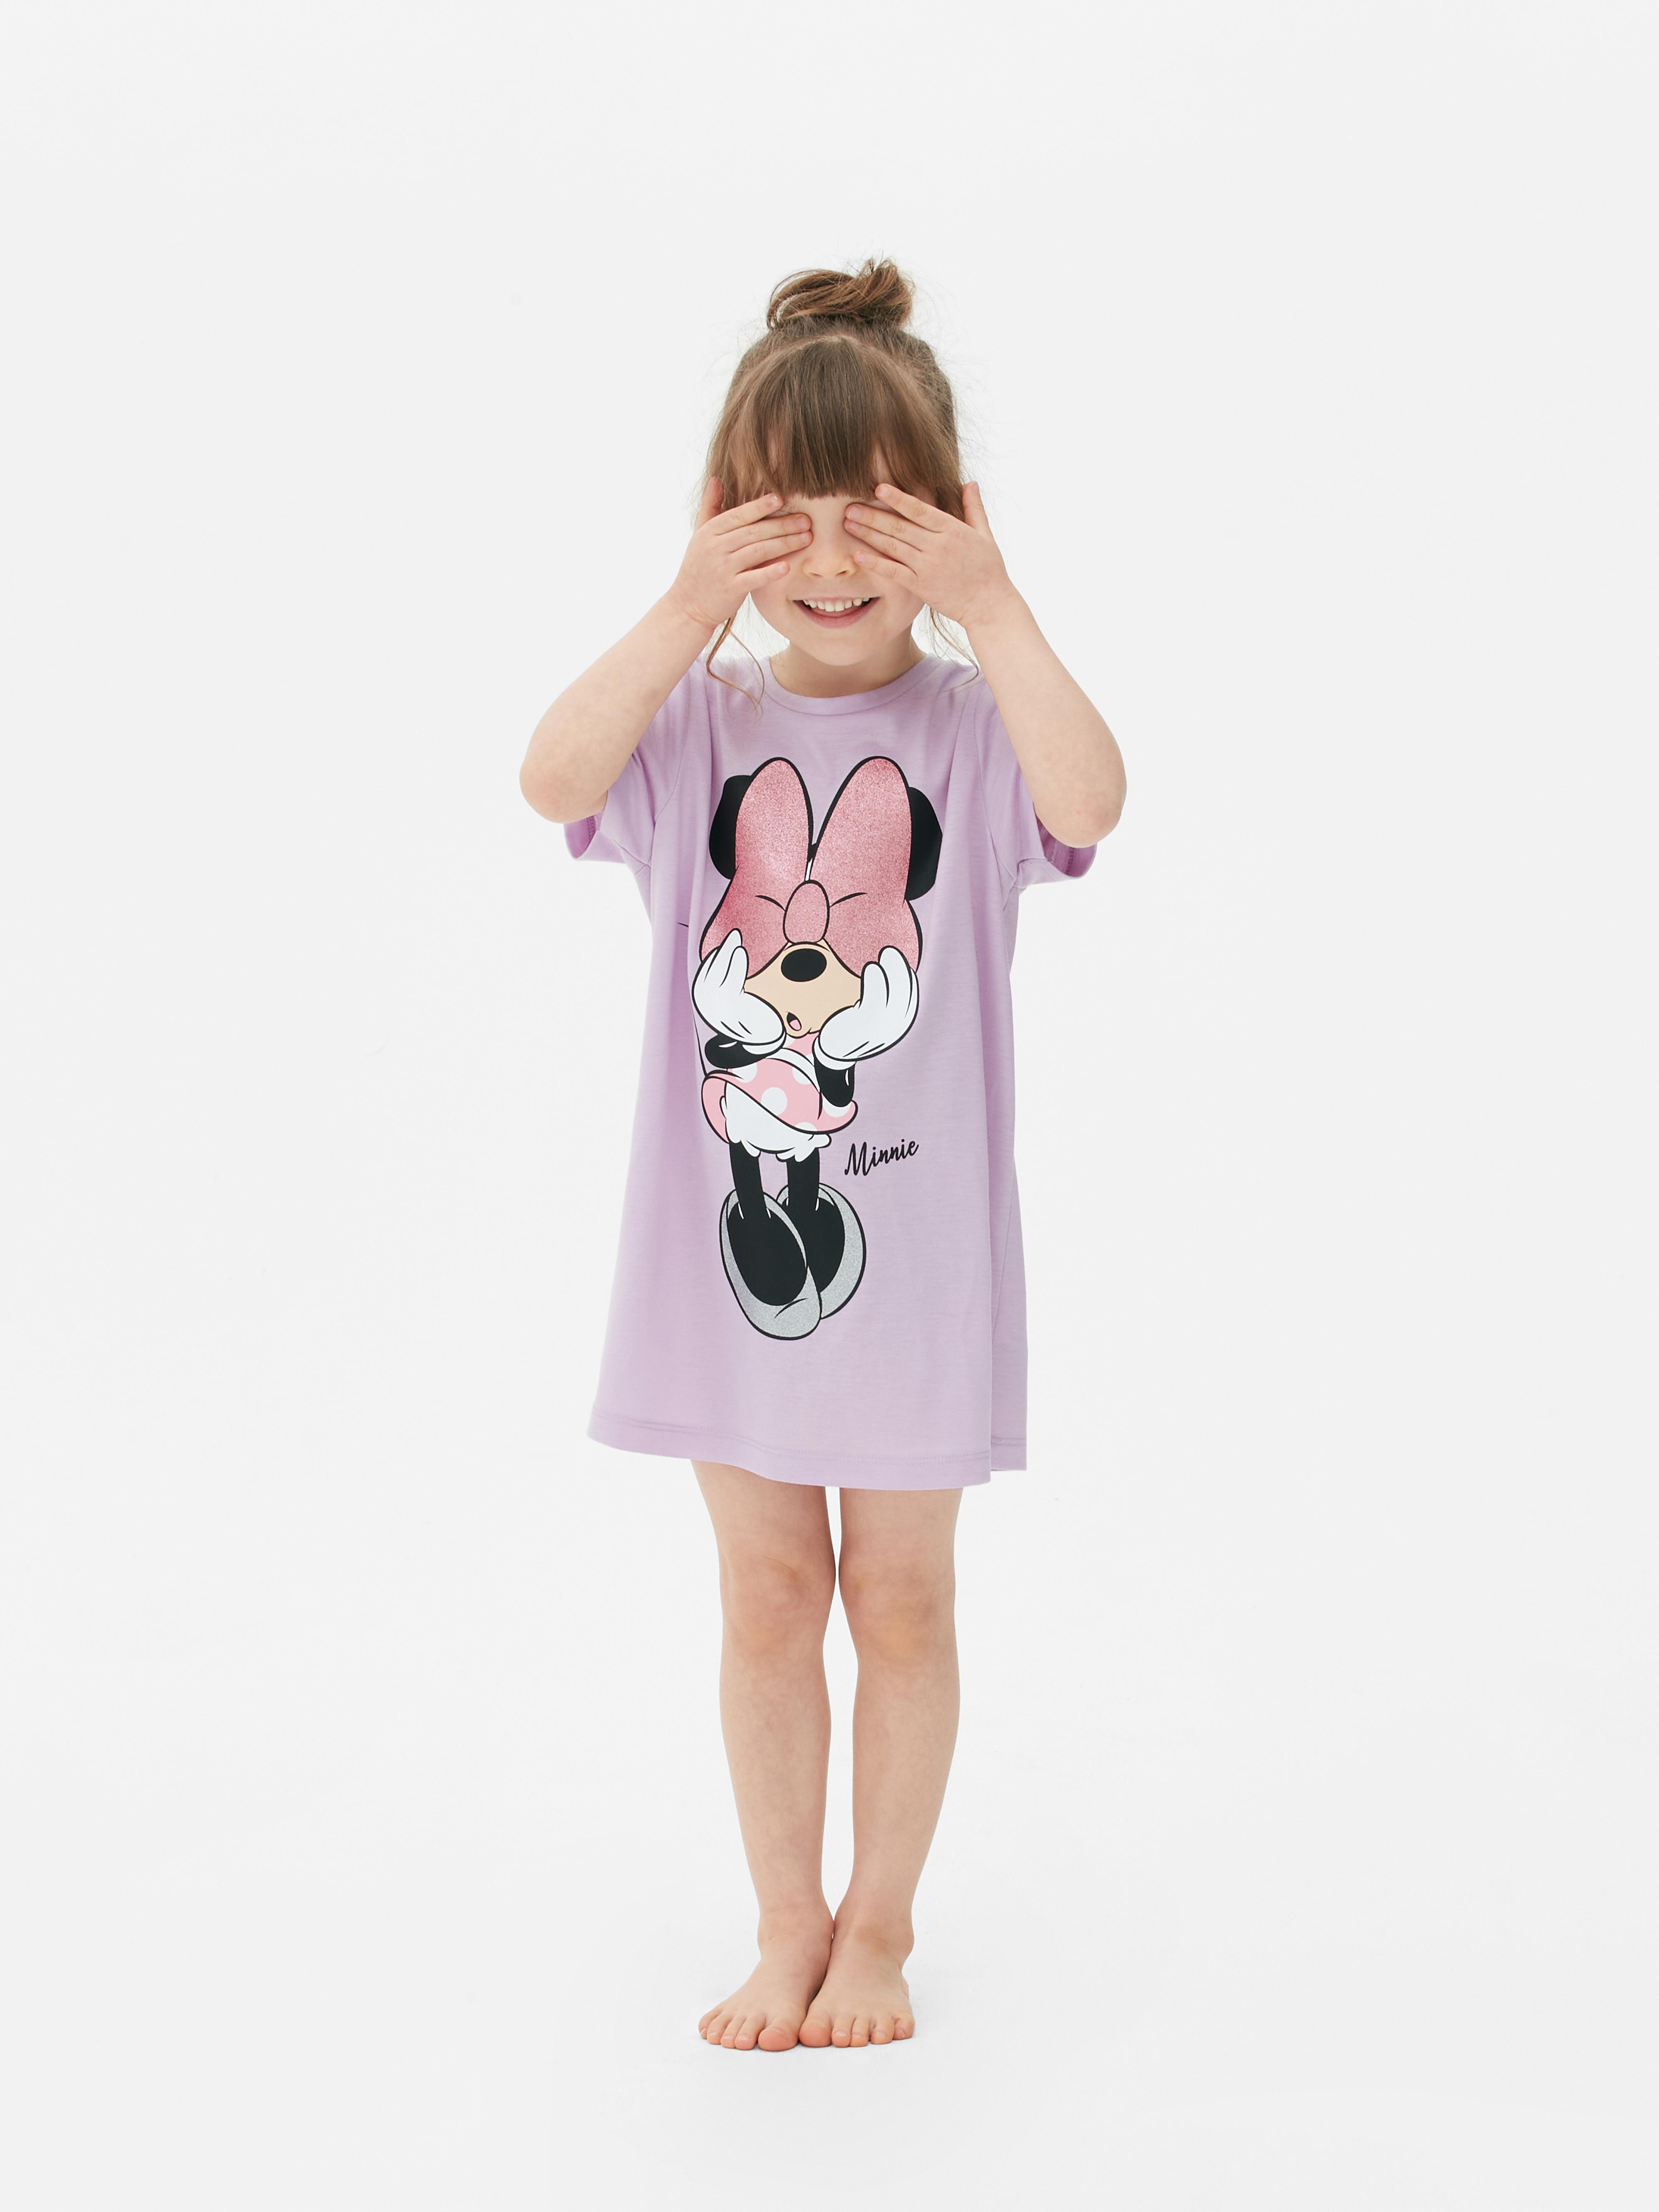 Camiseta de de Minnie Mouse | Primark